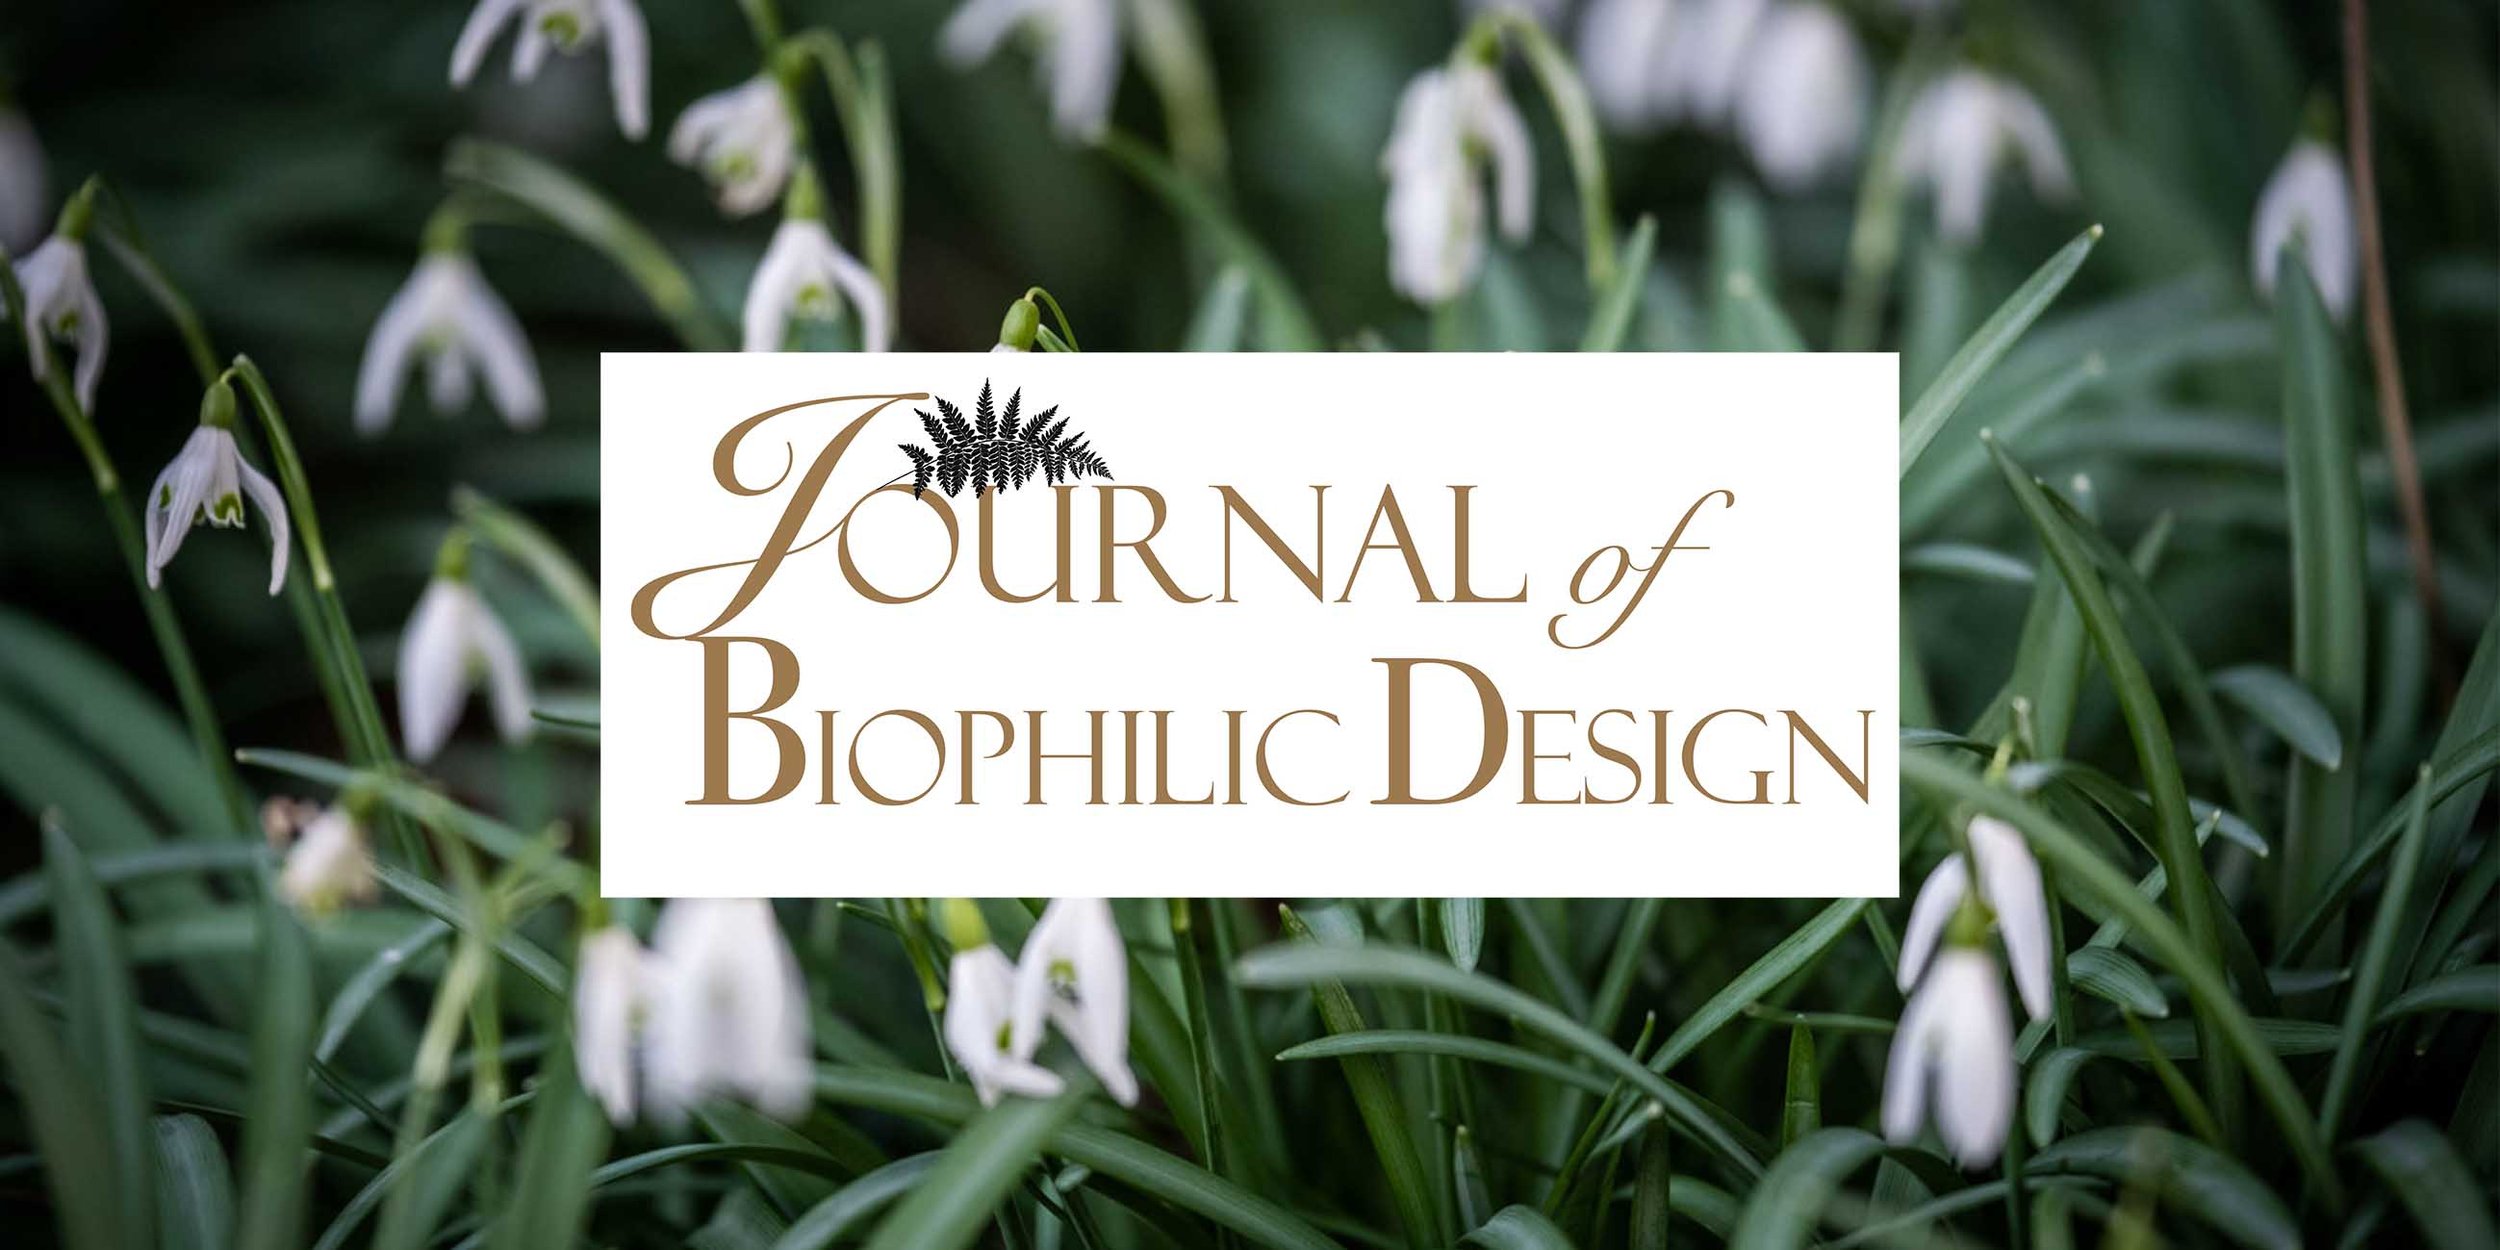 Journal+of+Biophilic+design+snowdrops+biophilic+design+magazine+architecture